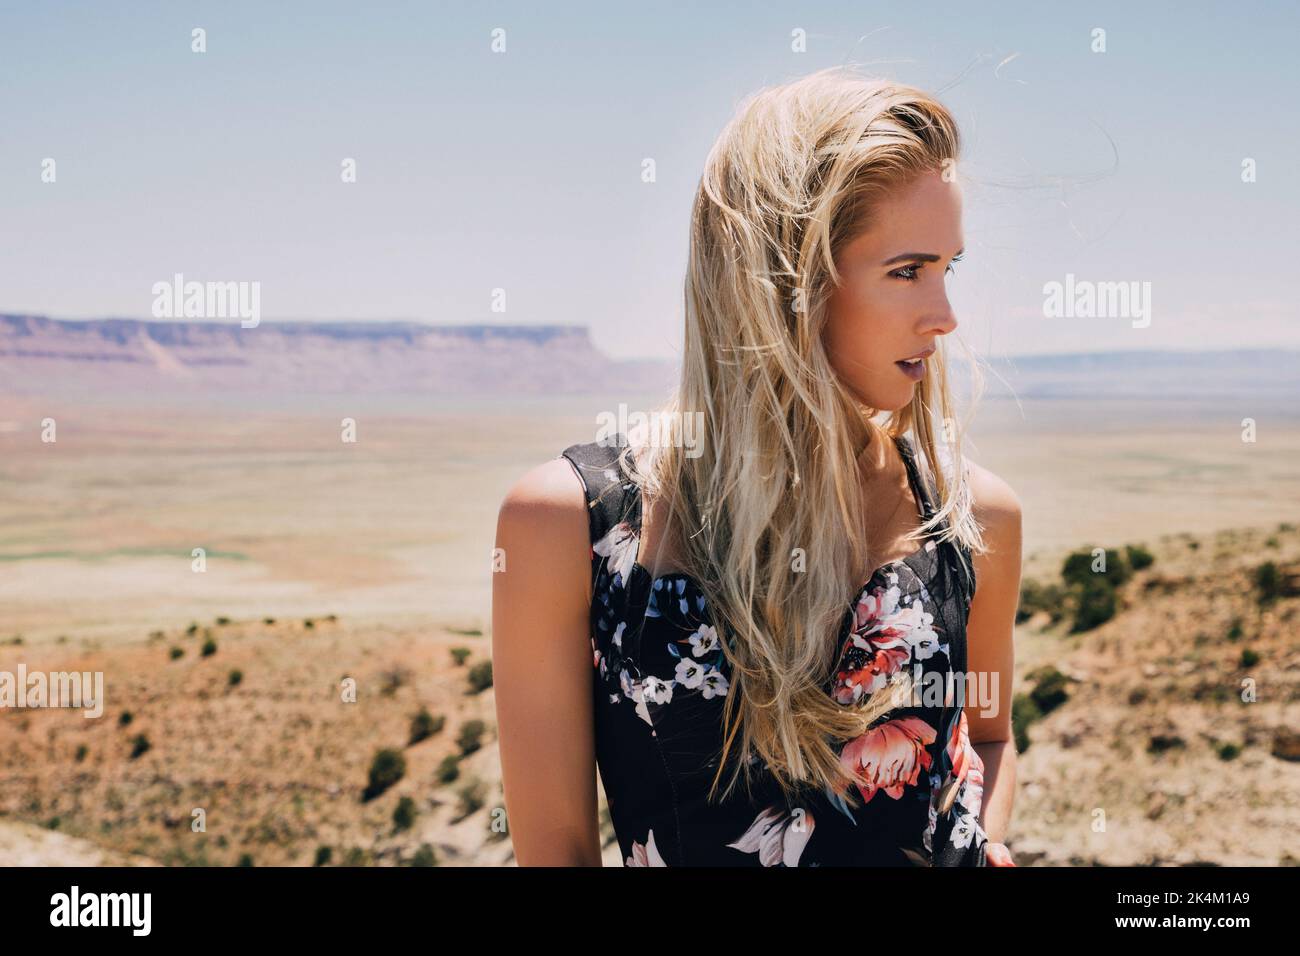 Ritratto di bella donna bionda con capelli lunghi nel paesaggio desertico Foto Stock